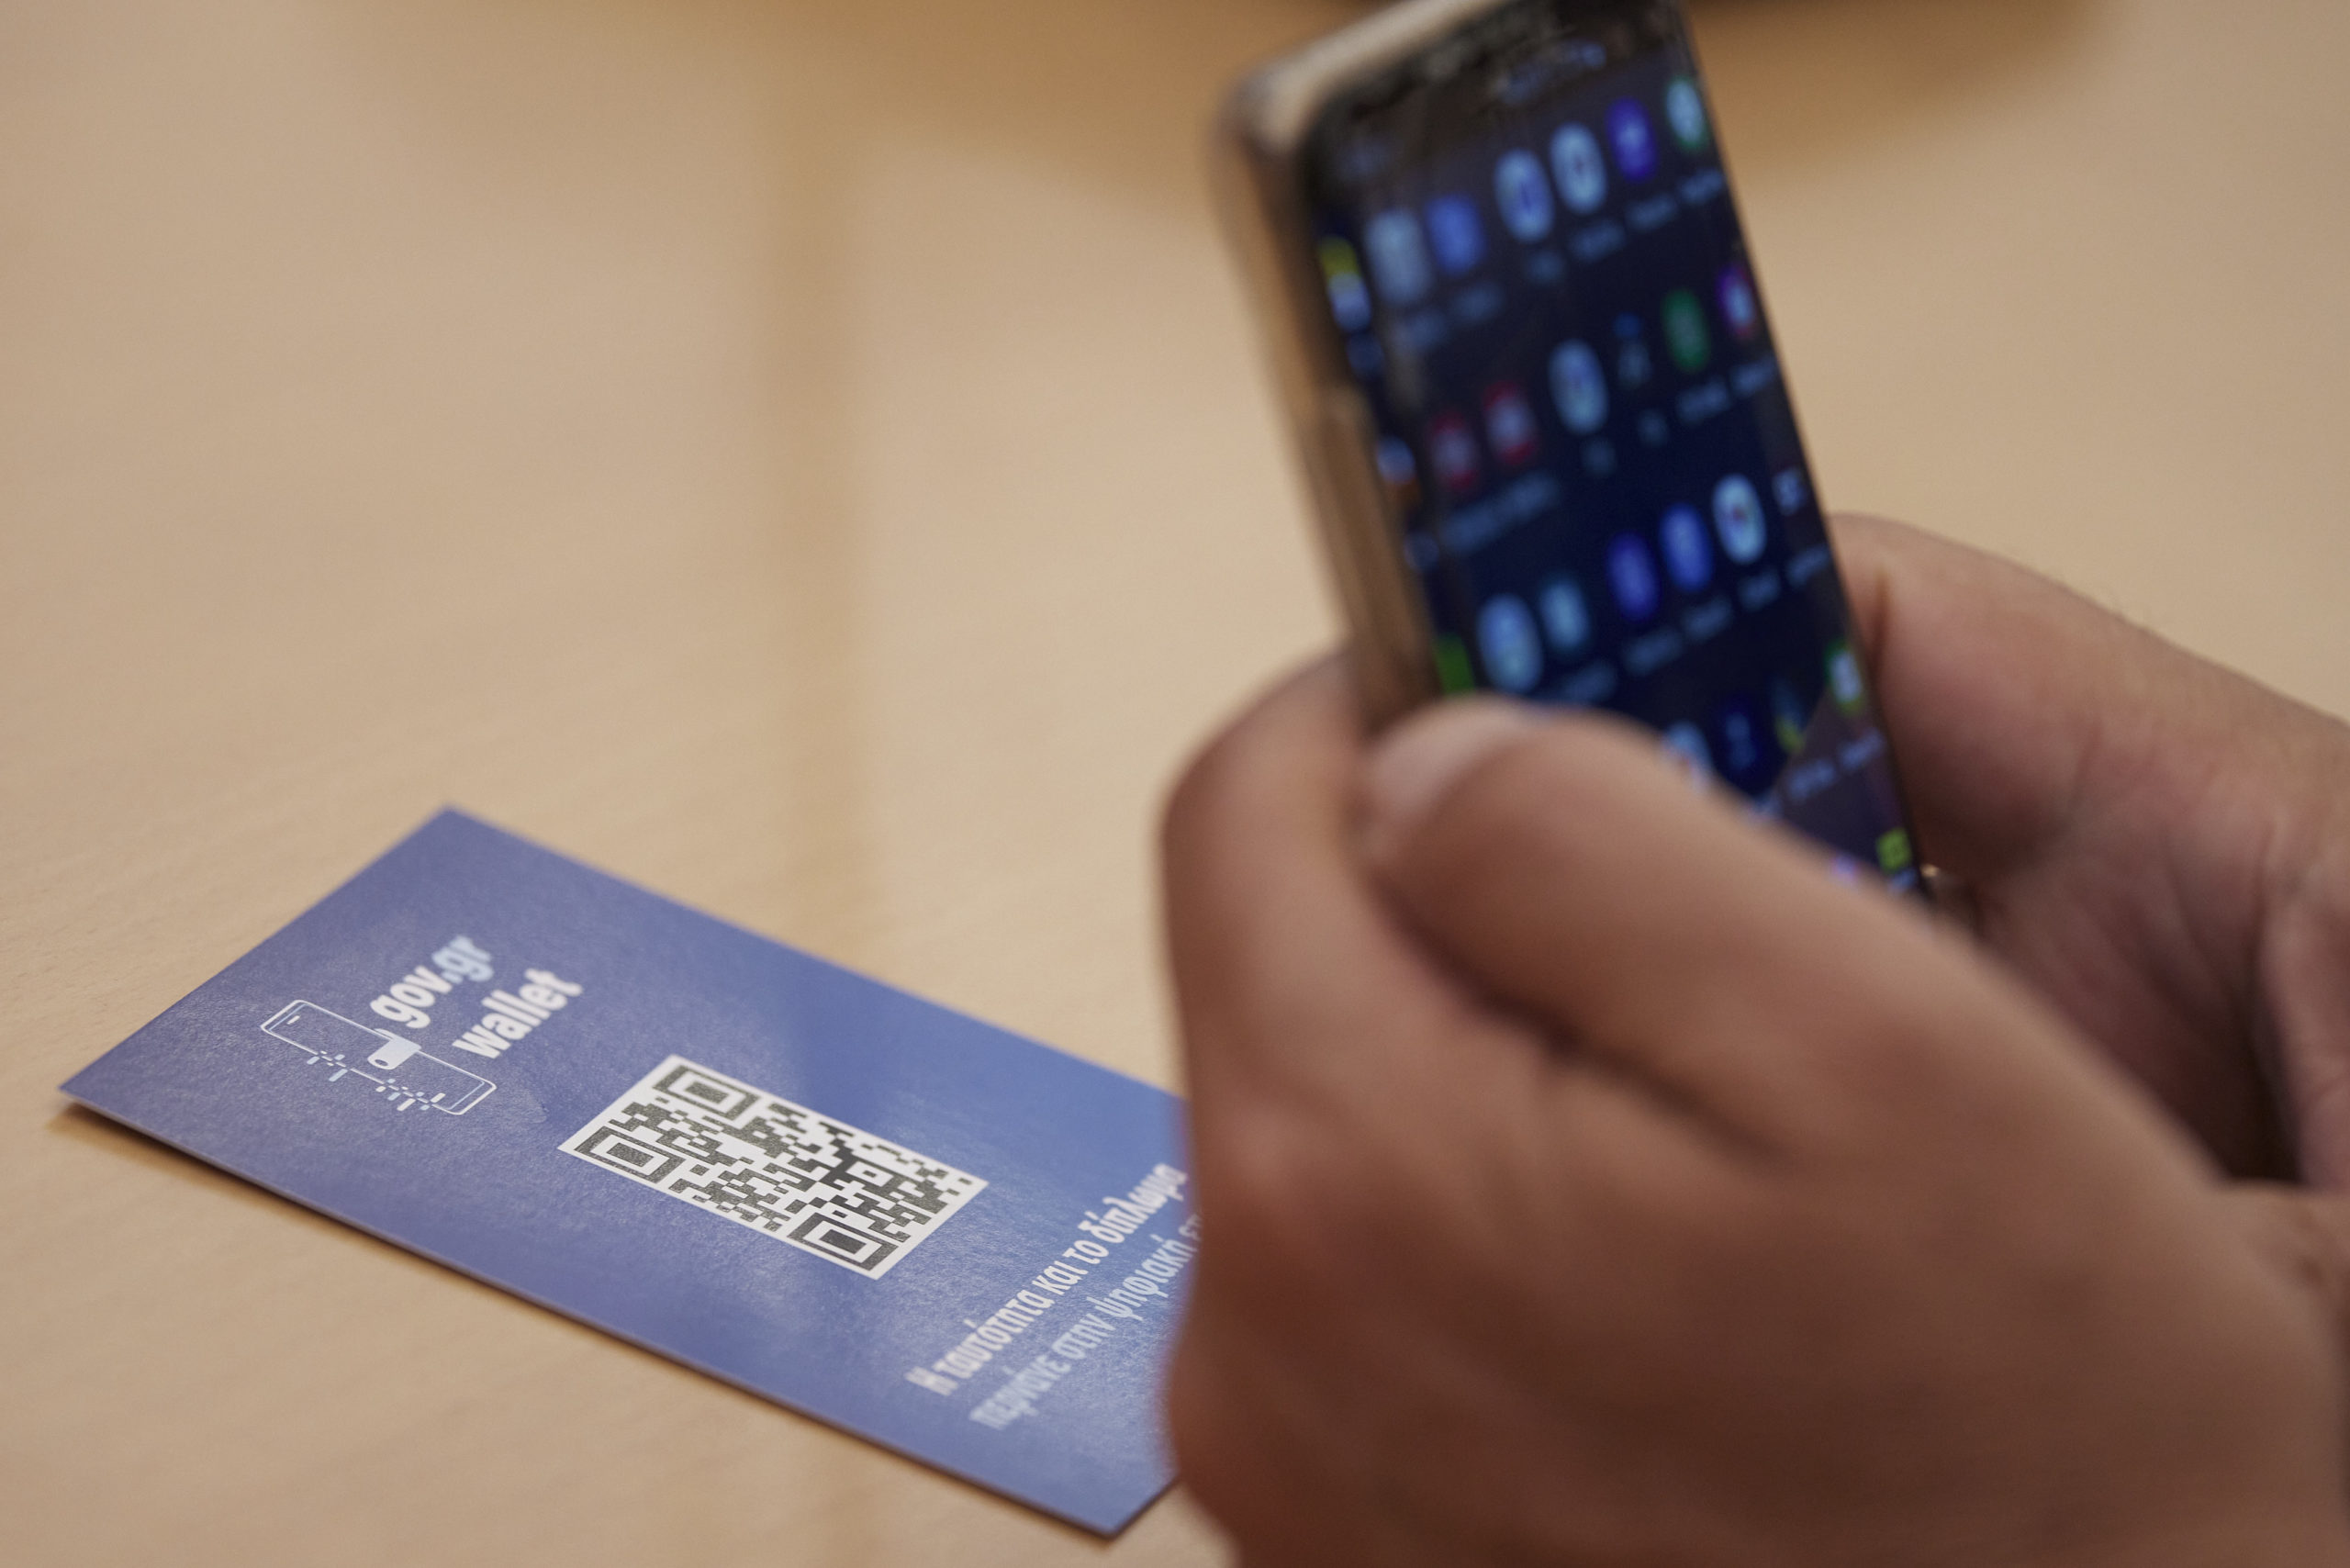 Βήμα – βήμα πώς κατεβάζουμε την ψηφιακή ταυτότητα και το ψηφιακό δίπλωμα μέσω του Gov.gr Wallet